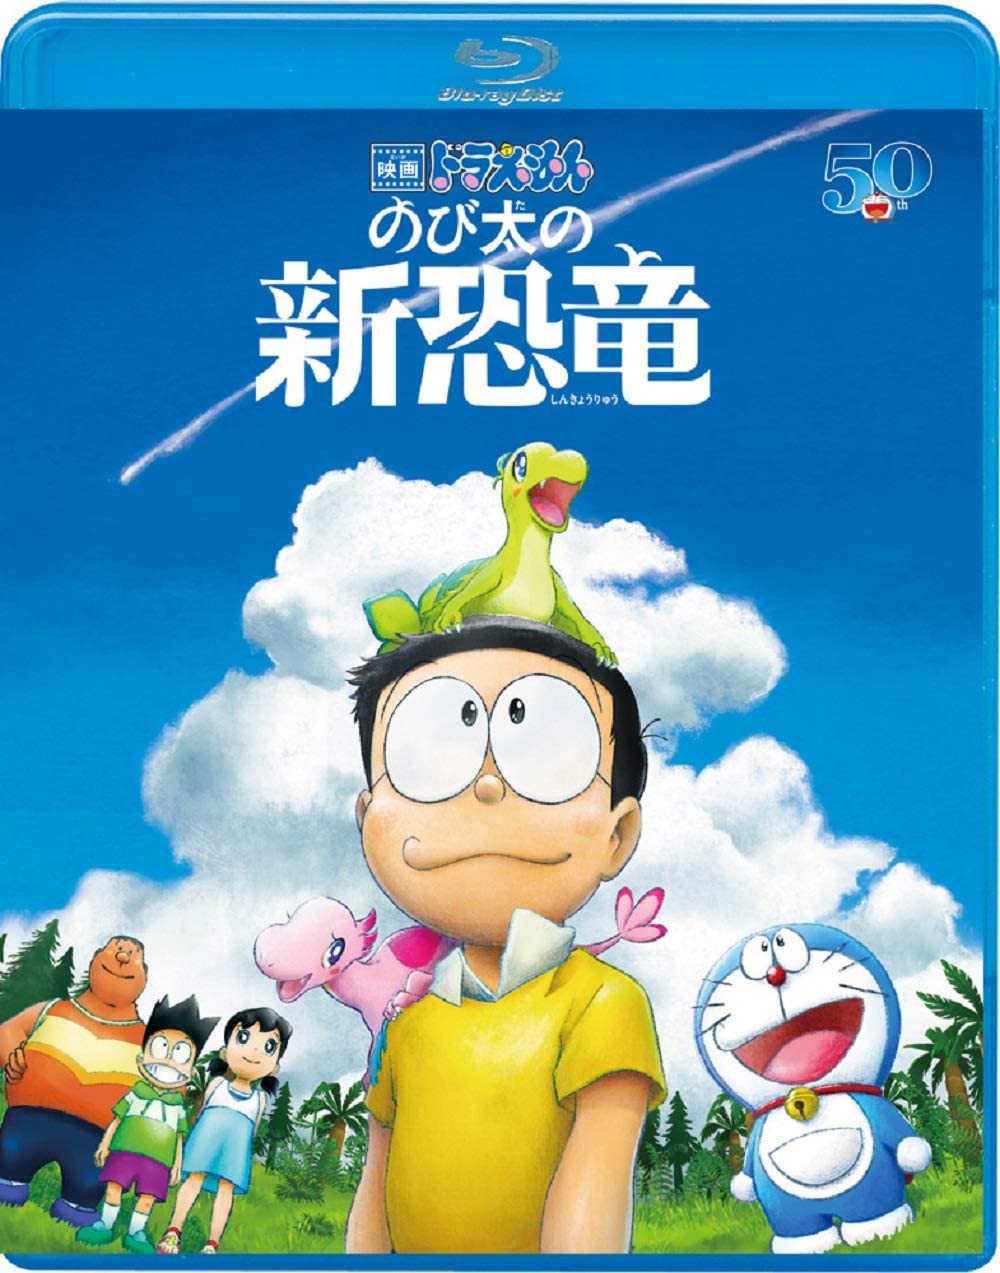 Download Doraemon Nobitas New Dinosaur 1080p Bluray X264 Dts Wiki Softarchive